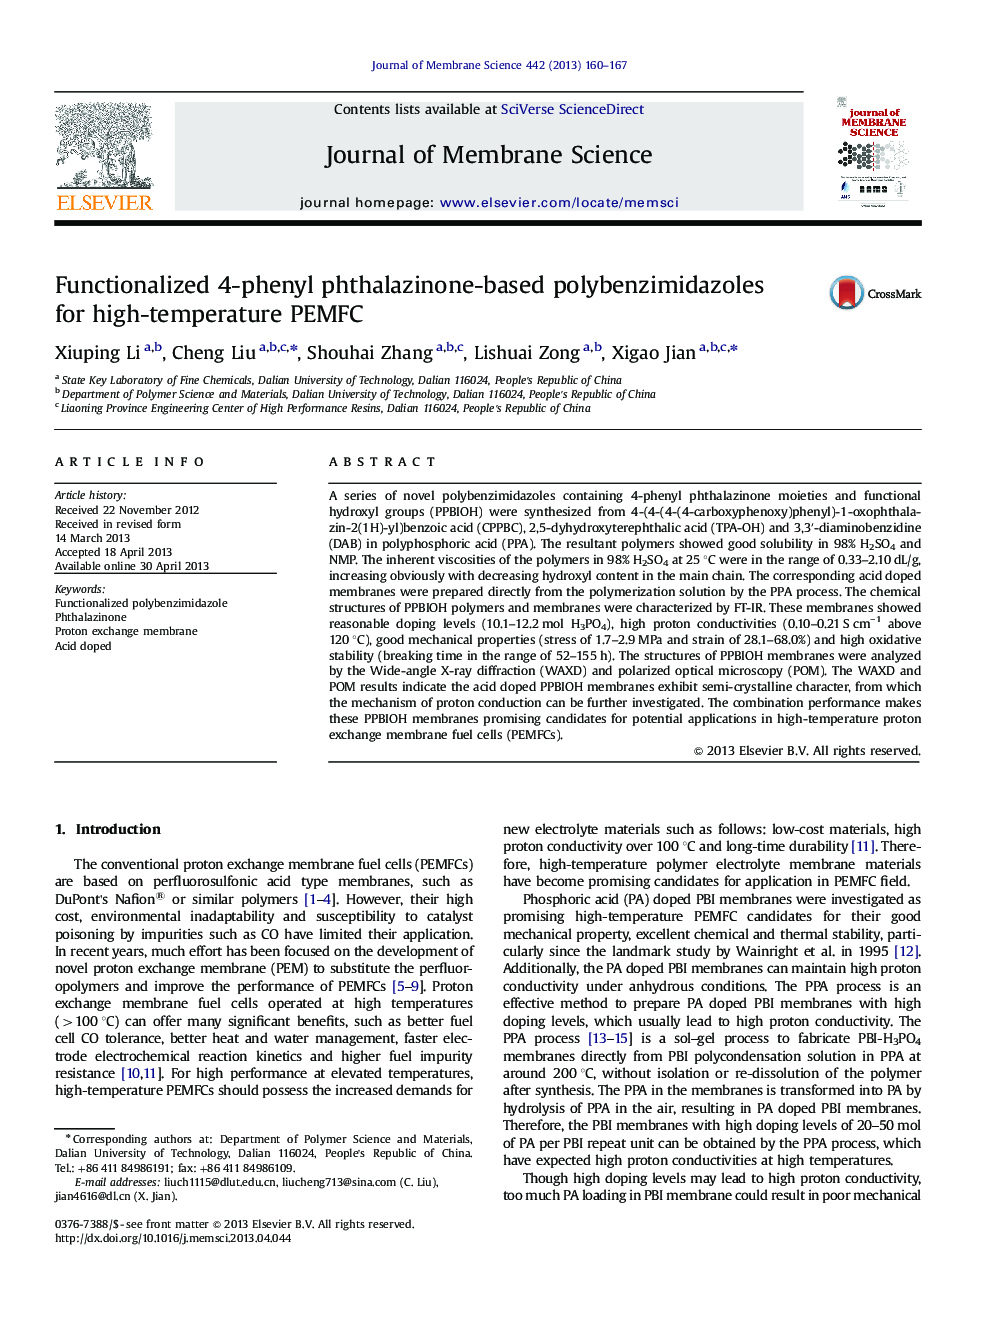 Functionalized 4-phenyl phthalazinone-based polybenzimidazoles for high-temperature PEMFC